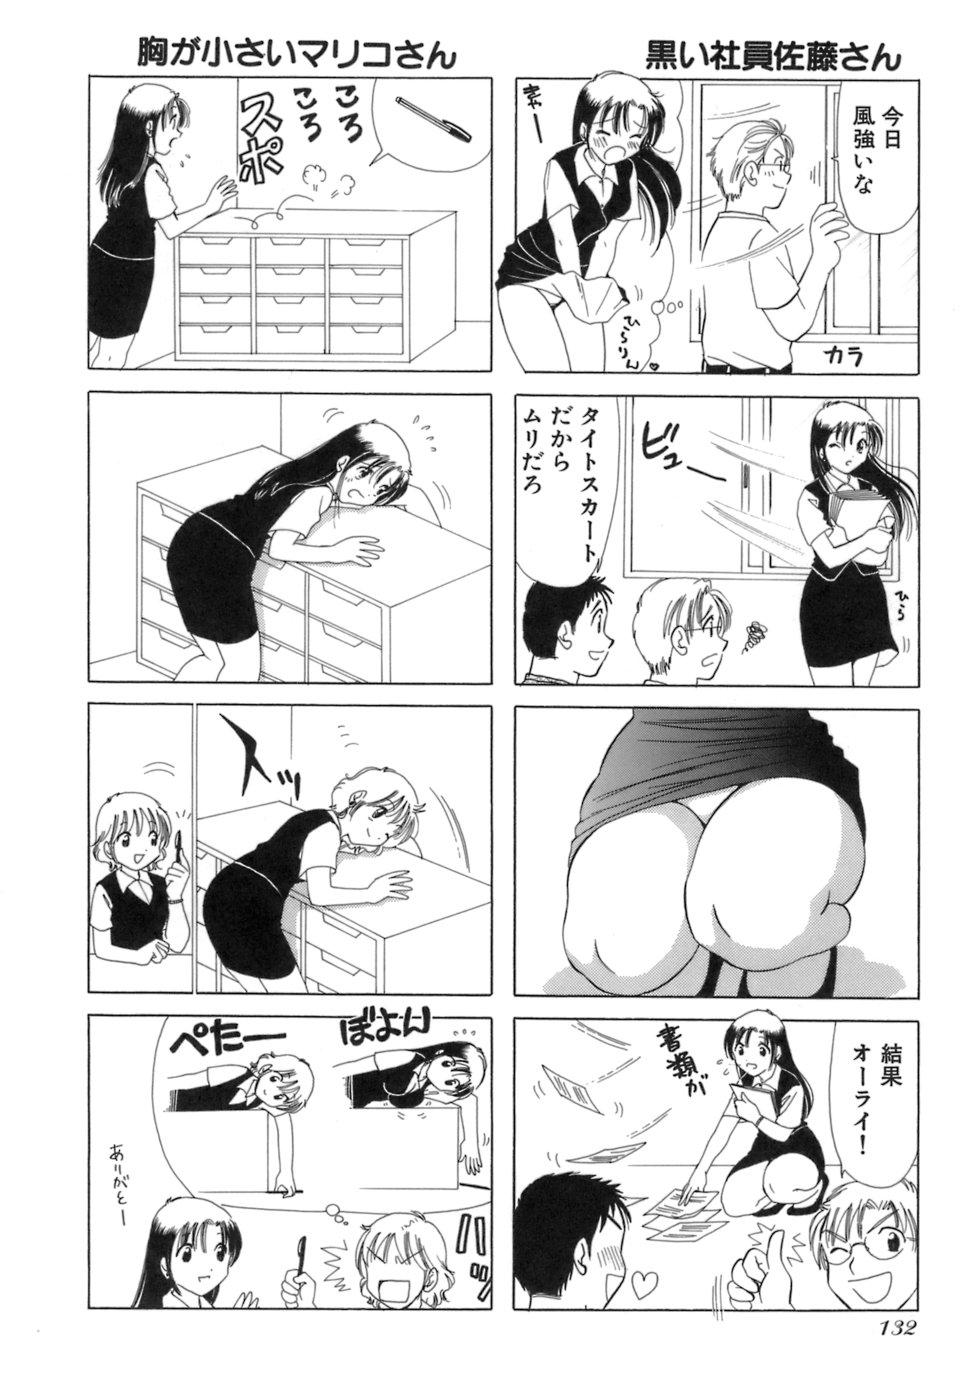 Eriko-kun, Ocha!! Vol.03 134